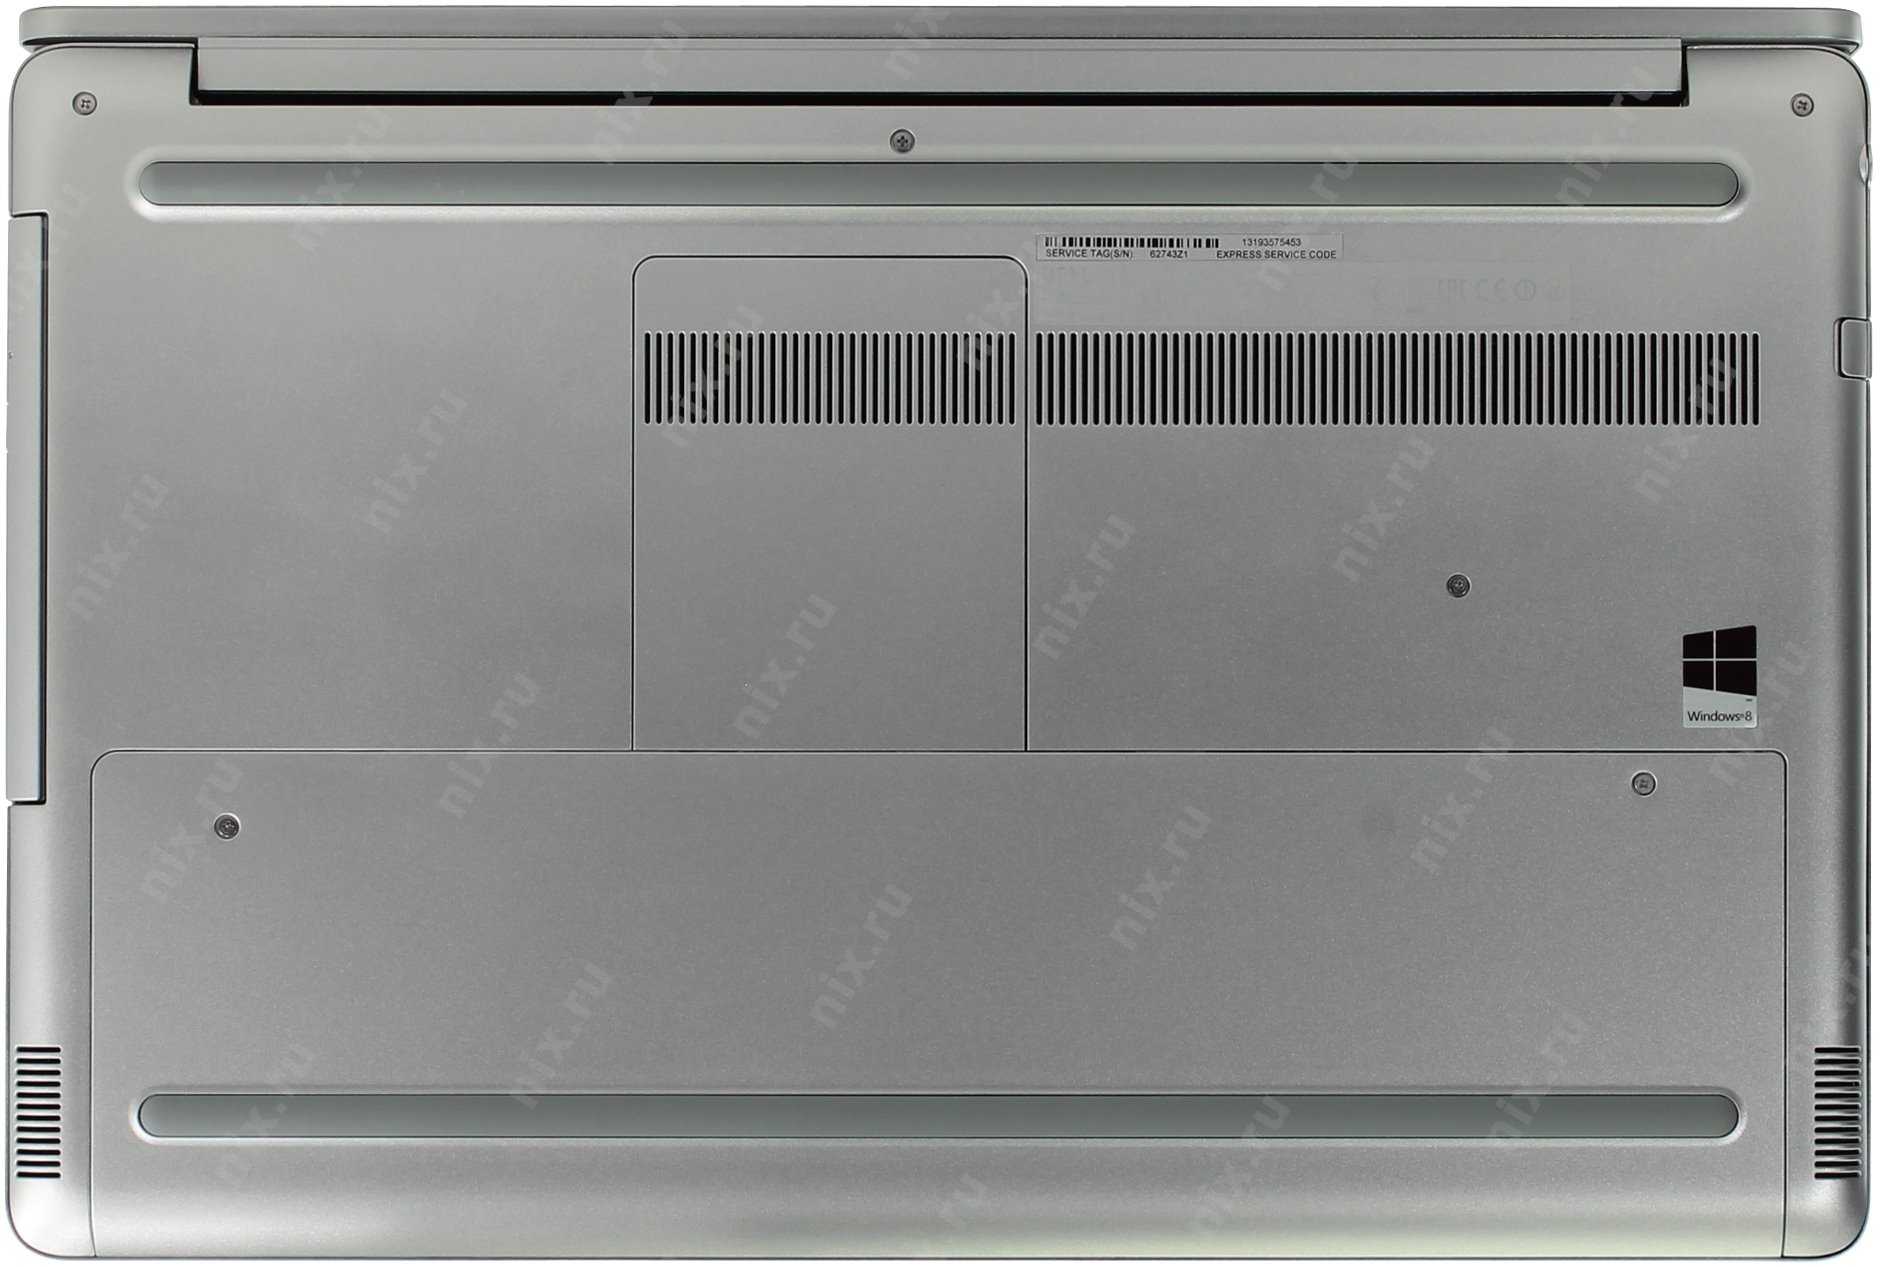 Ноутбук Dell Inspiron 7737 (I77FT71610DDW-34) - подробные характеристики обзоры видео фото Цены в интернет-магазинах где можно купить ноутбук Dell Inspiron 7737 (I77FT71610DDW-34)